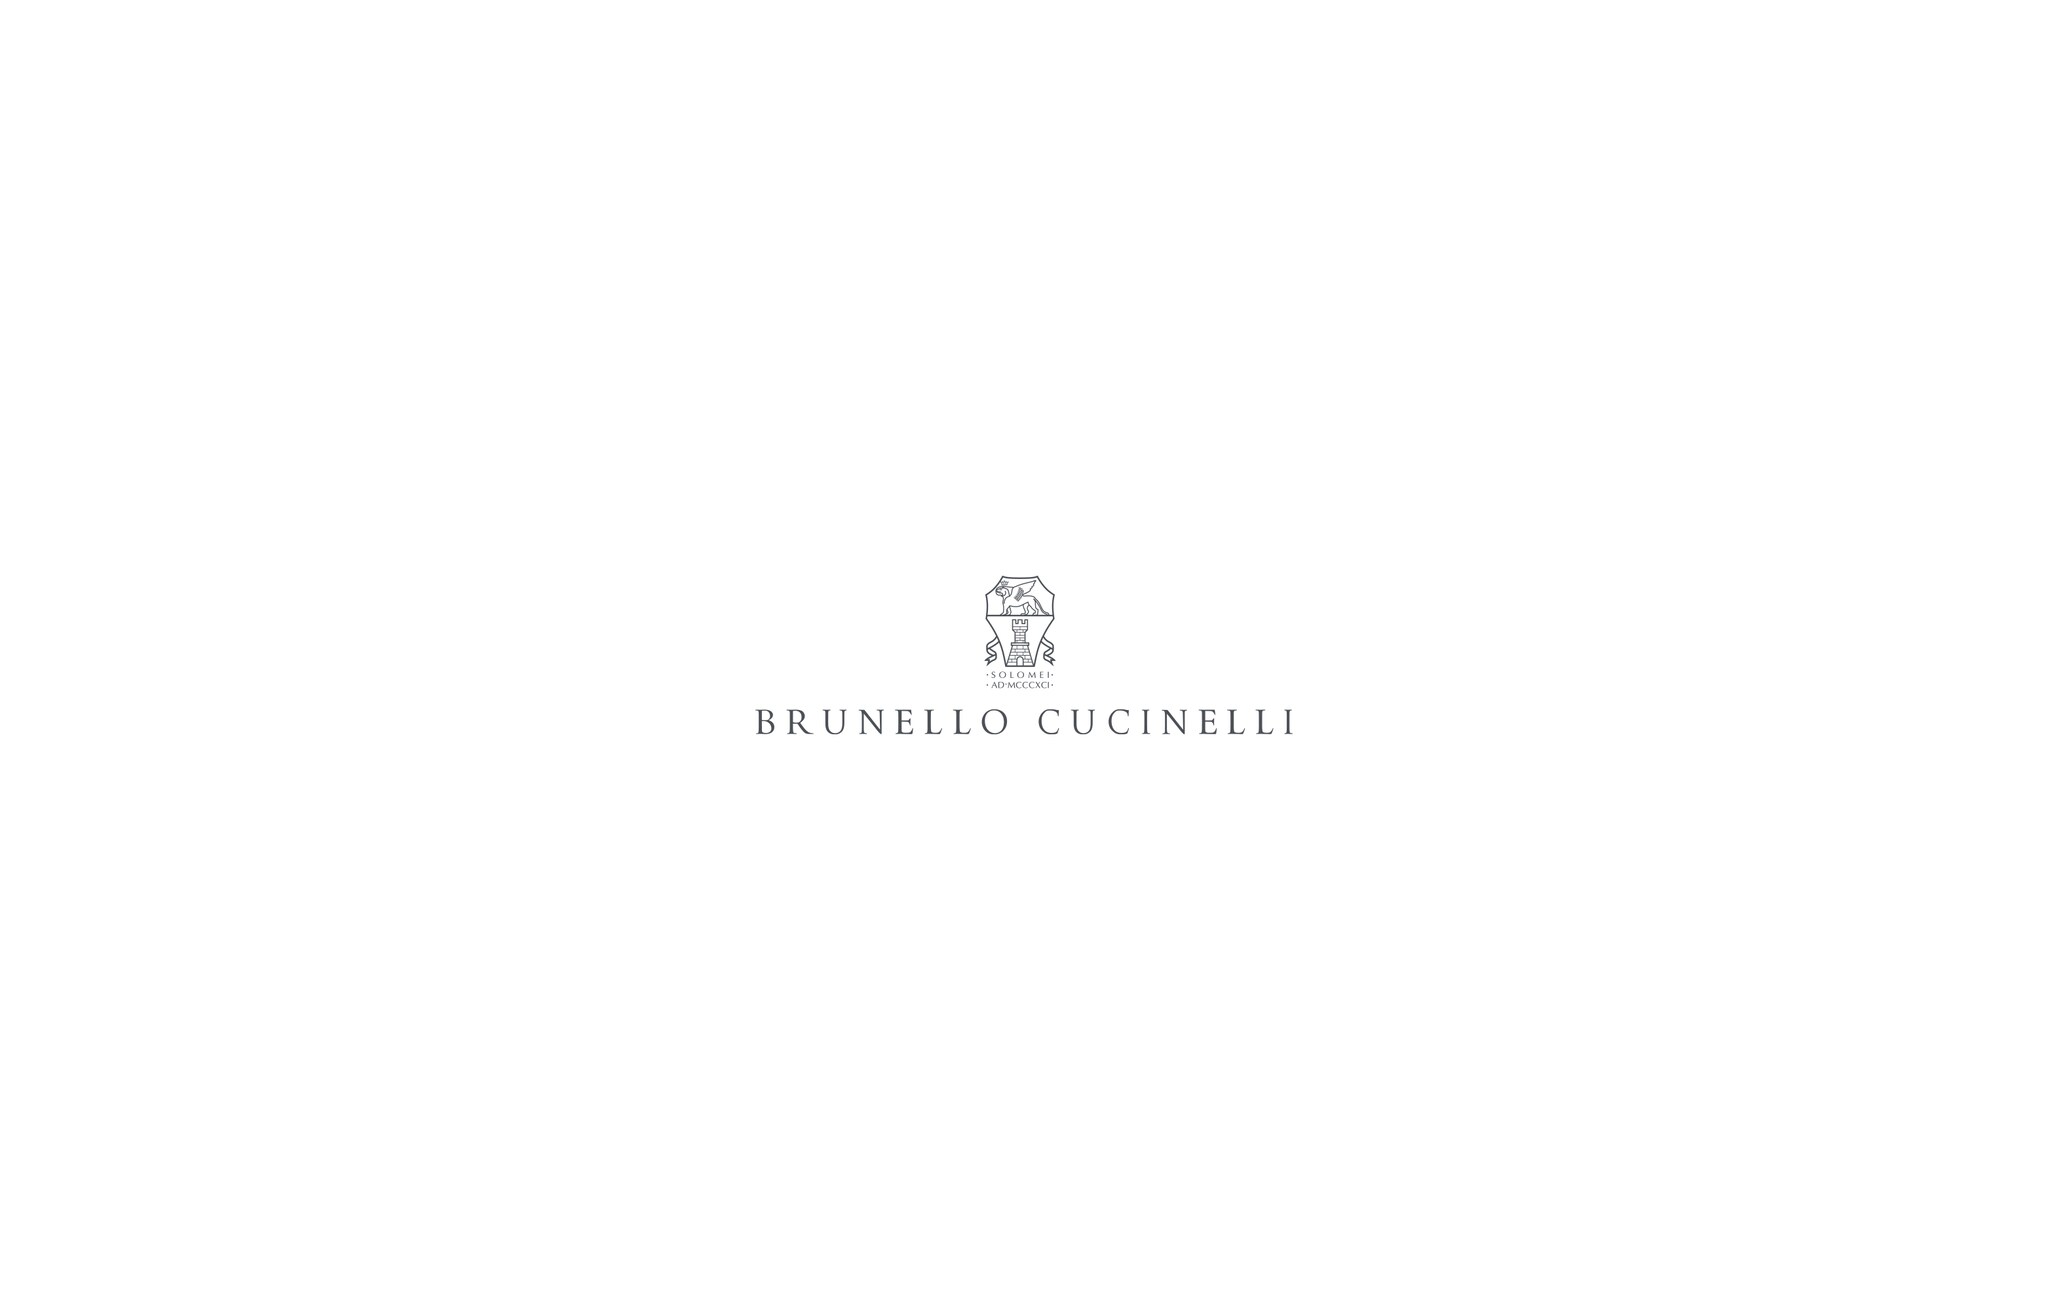  Chaqueta de cuatro bolsillos acolchada Denim Hombre - Brunello Cucinelli 